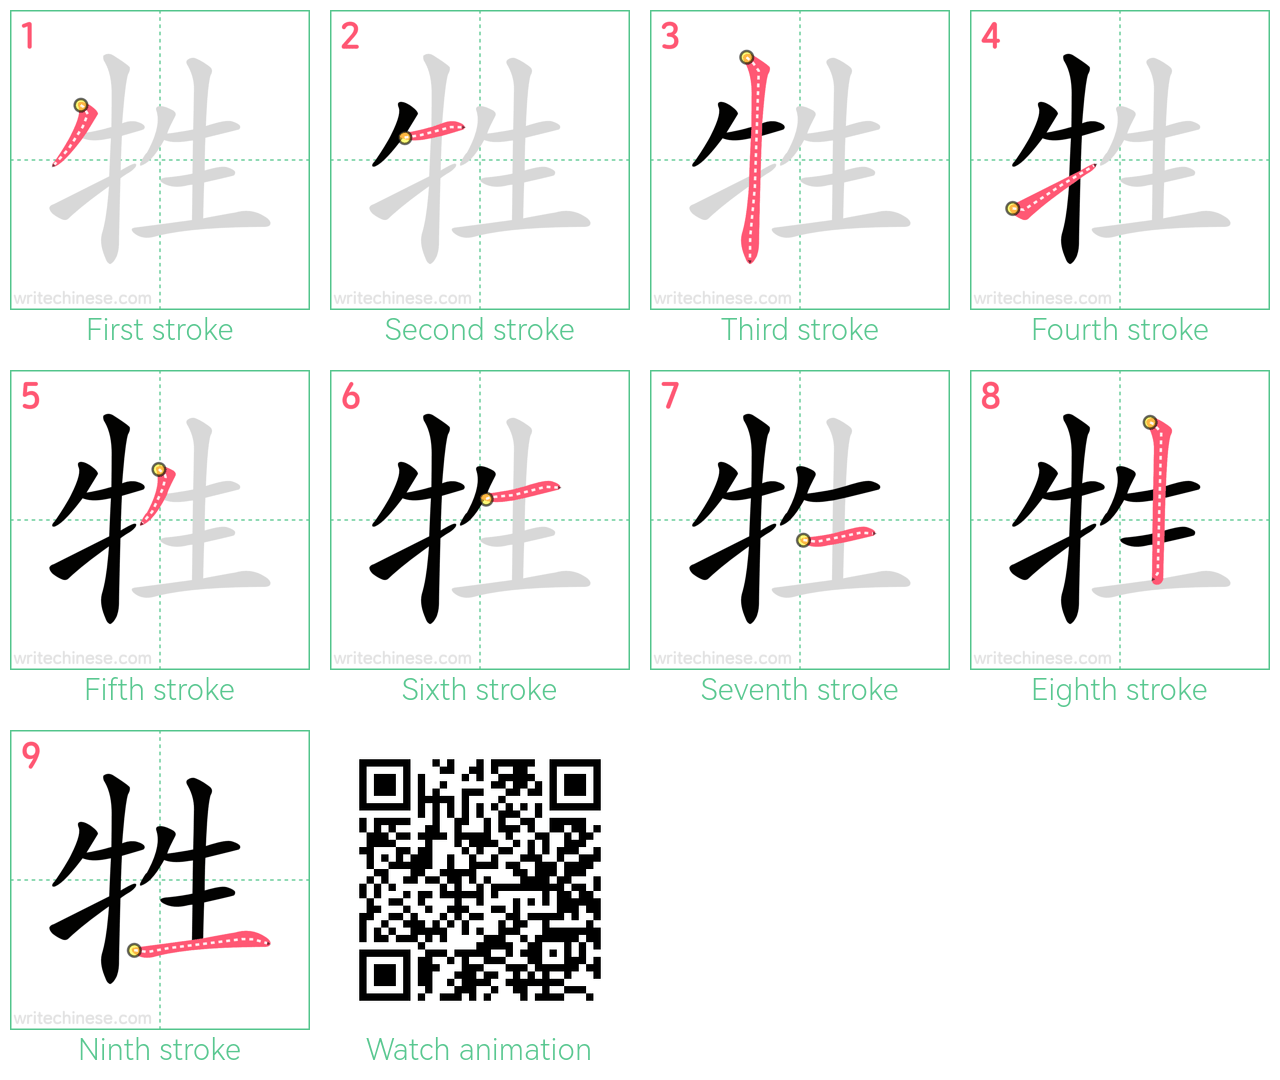 牲 step-by-step stroke order diagrams